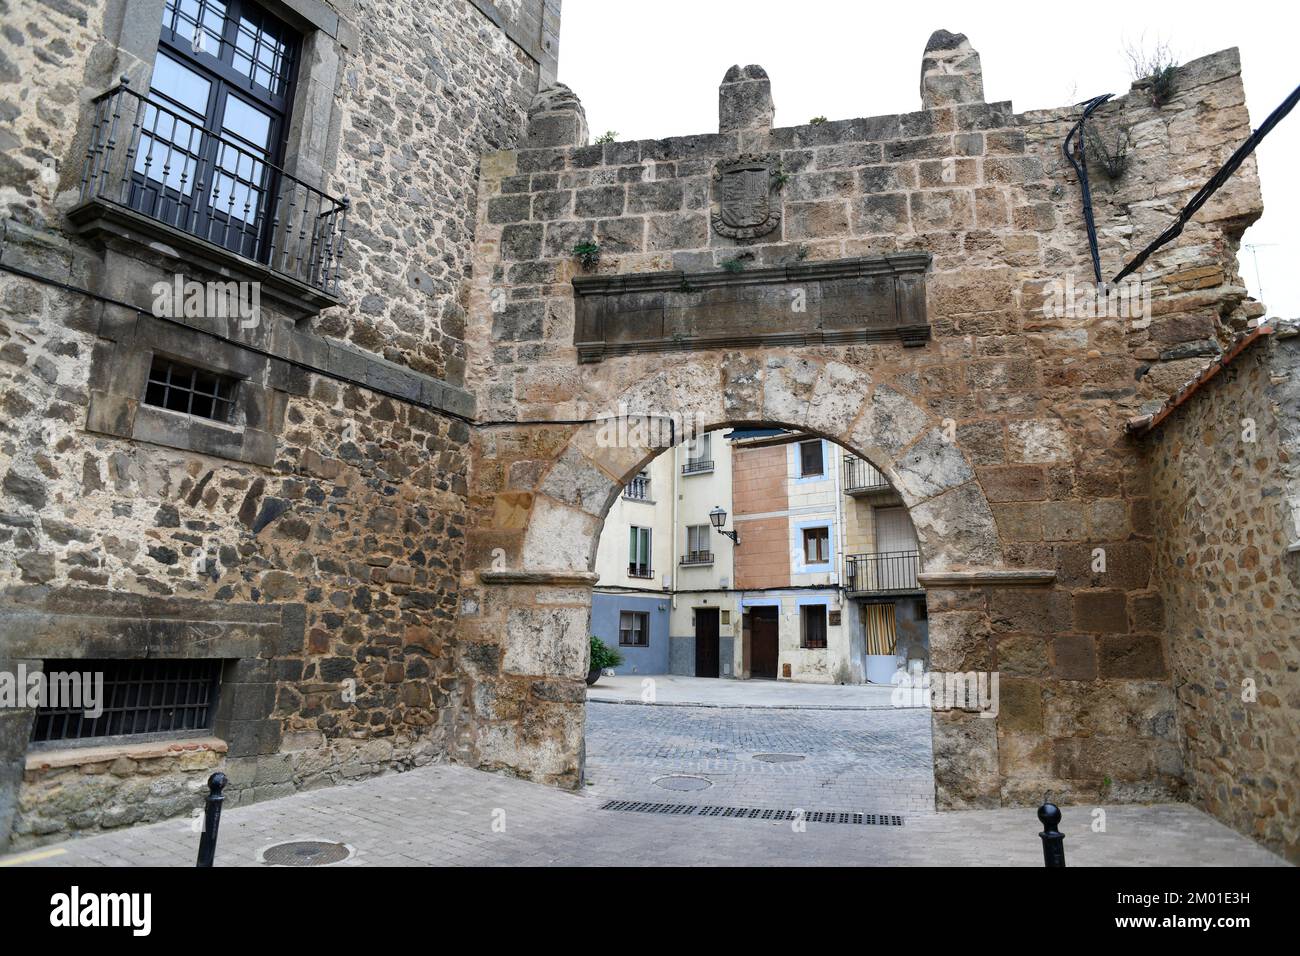 Ã. greda, Philip II door (entrance to arab quarter). Soria, Castilla y León, Spain. Stock Photo